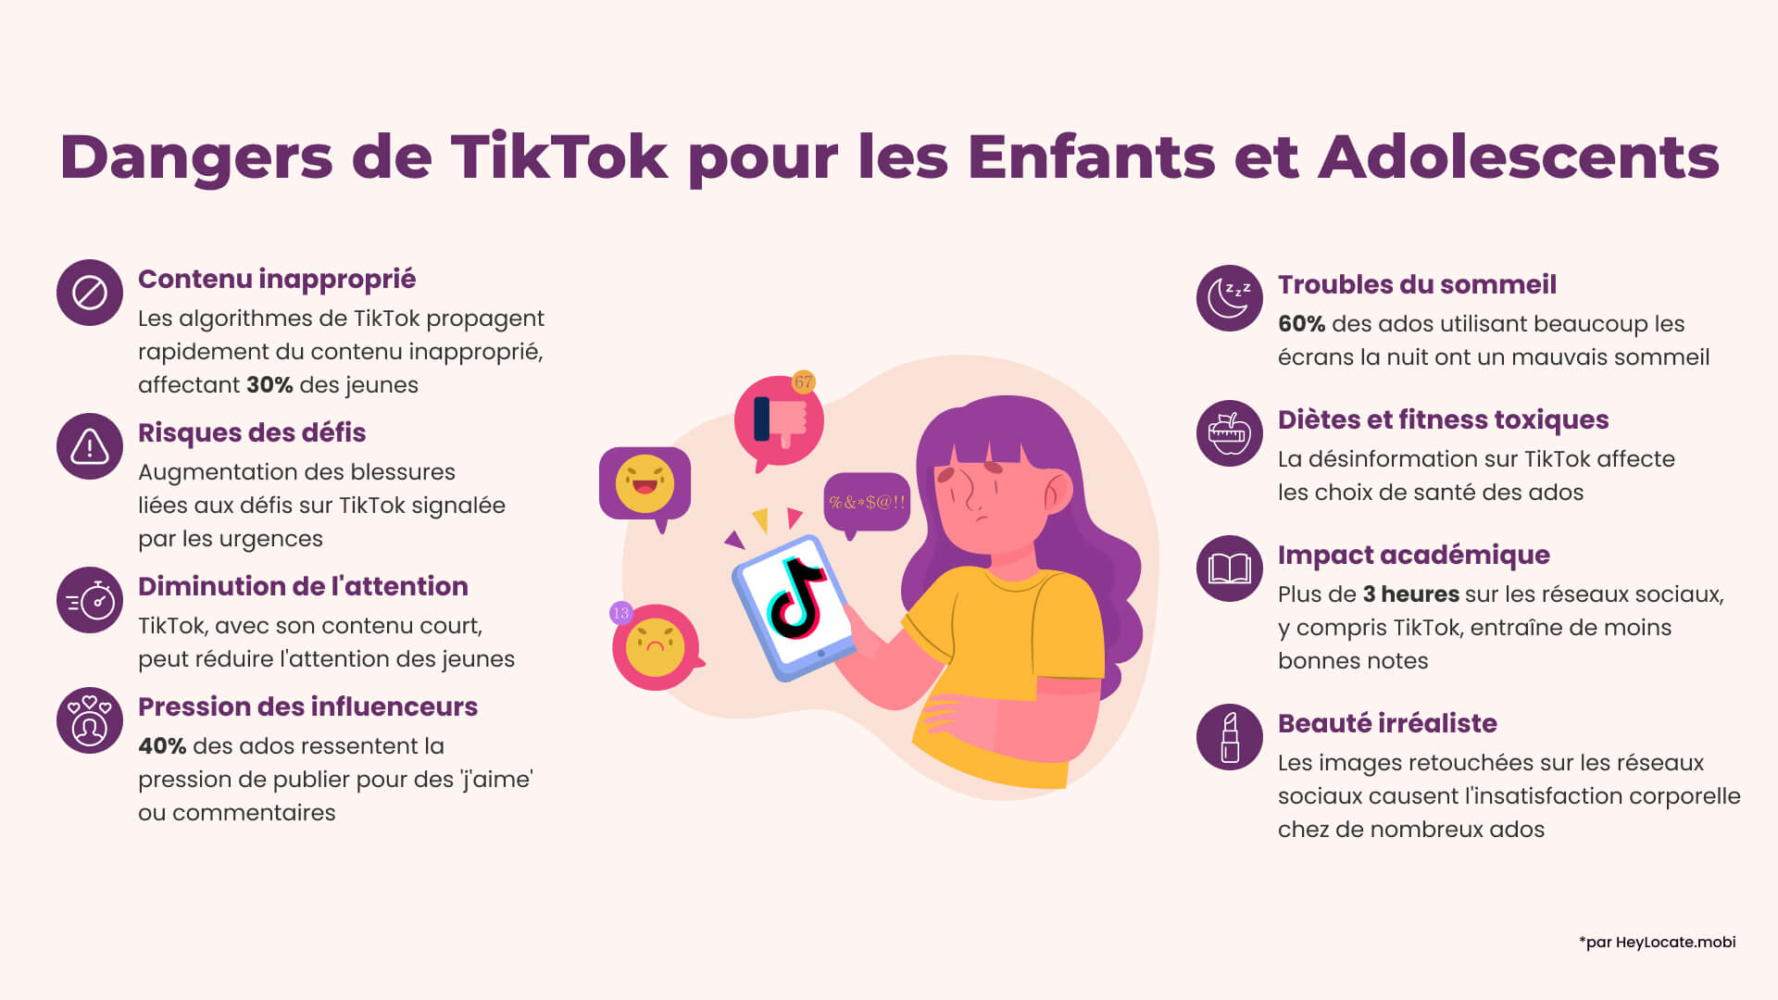 Liste des dangers de TikTok pour les enfants et les adolescents présentés dans l'infographie de HeyLocate.mobi
